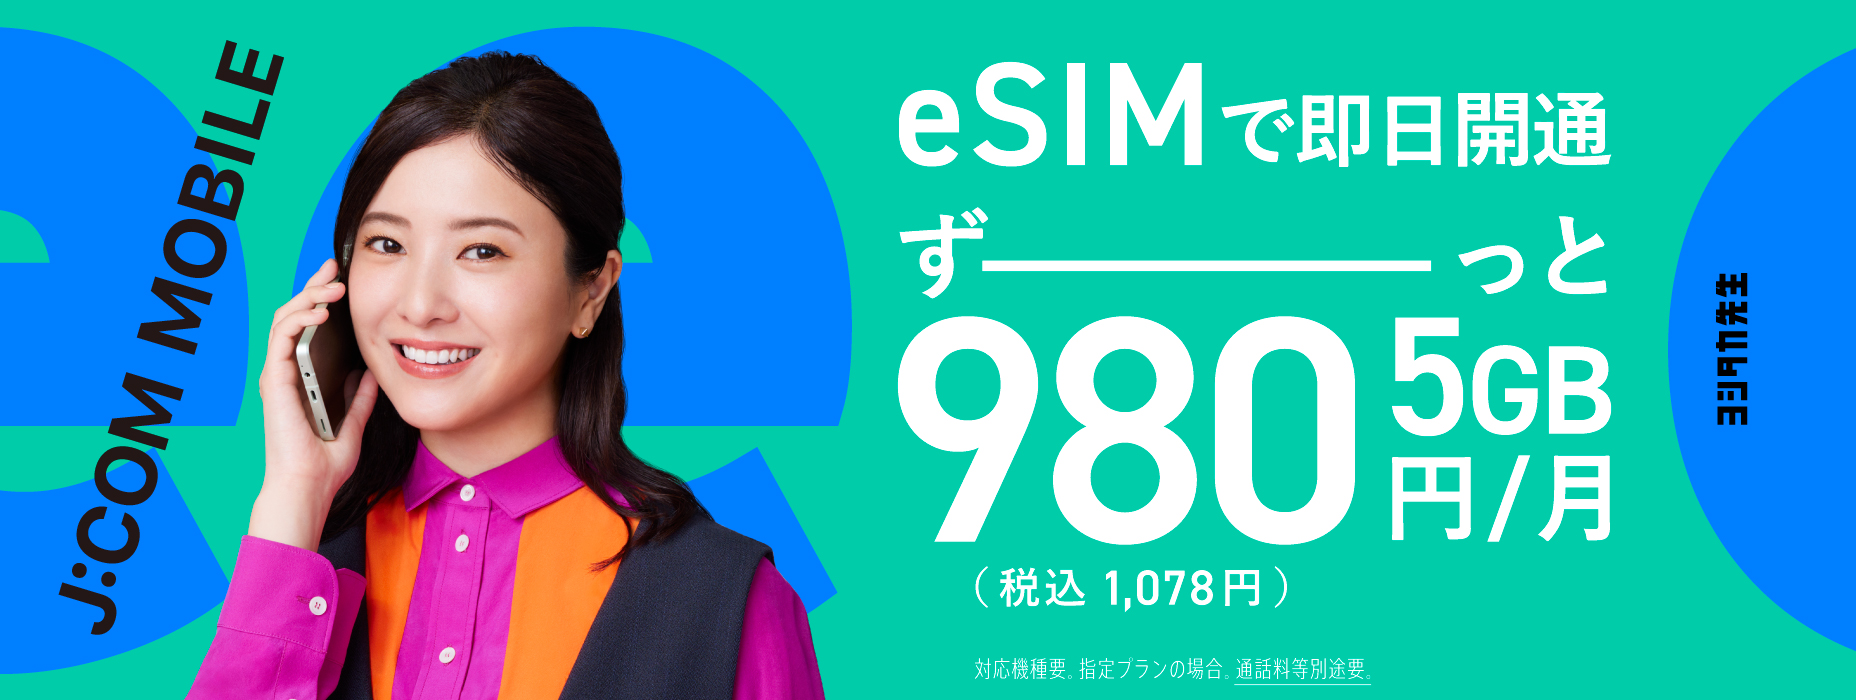 eSIM 신등장! 데이터 모음 적용으로 5GB 계속-980엔(부가세 포함 1,078엔)